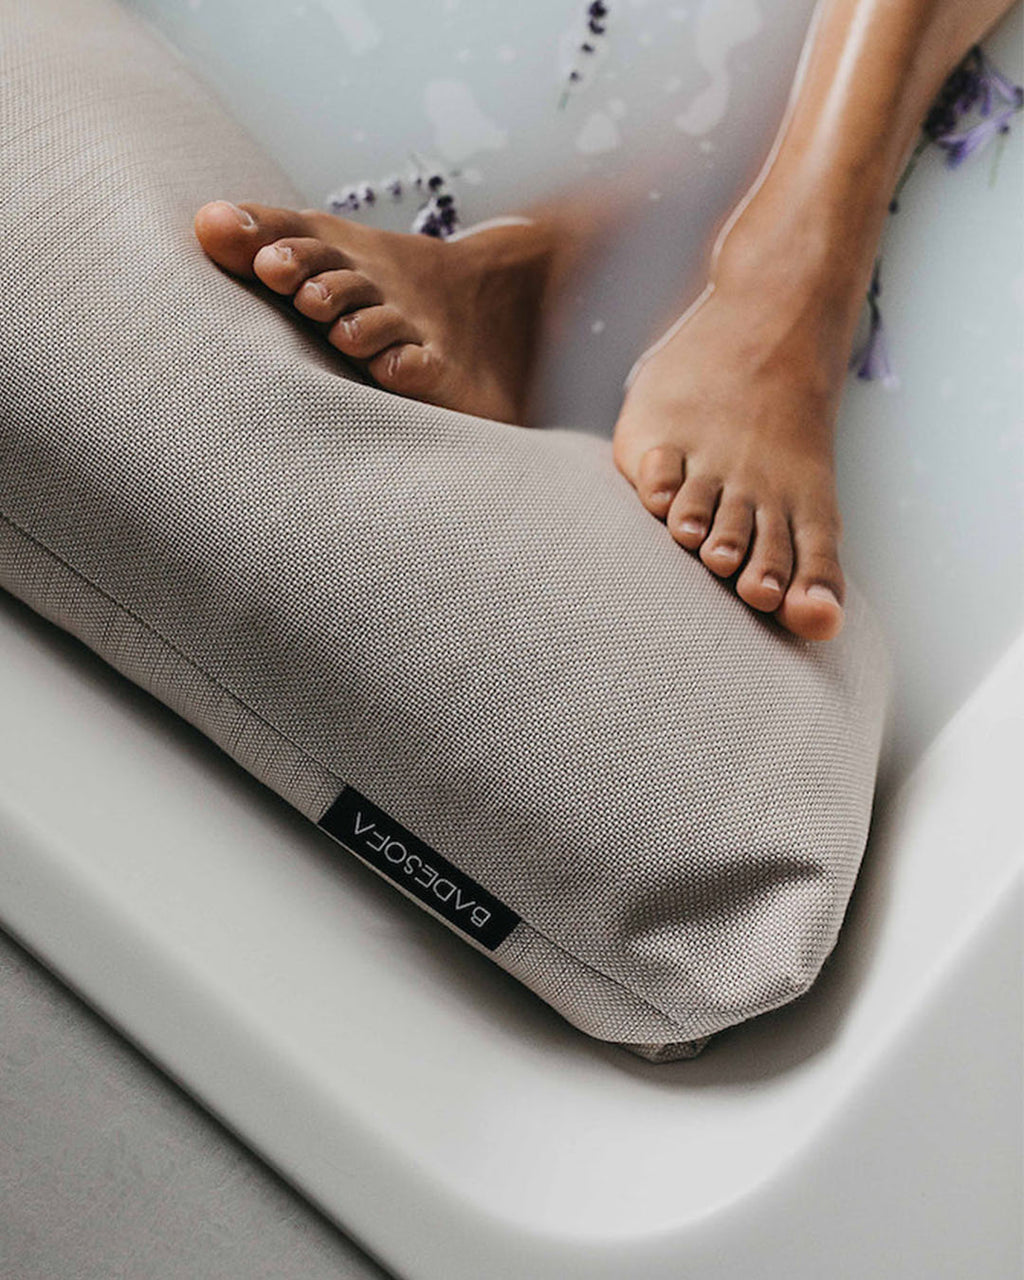 Bath Sofa - Foot bath pillow for tub – BADESOFA®